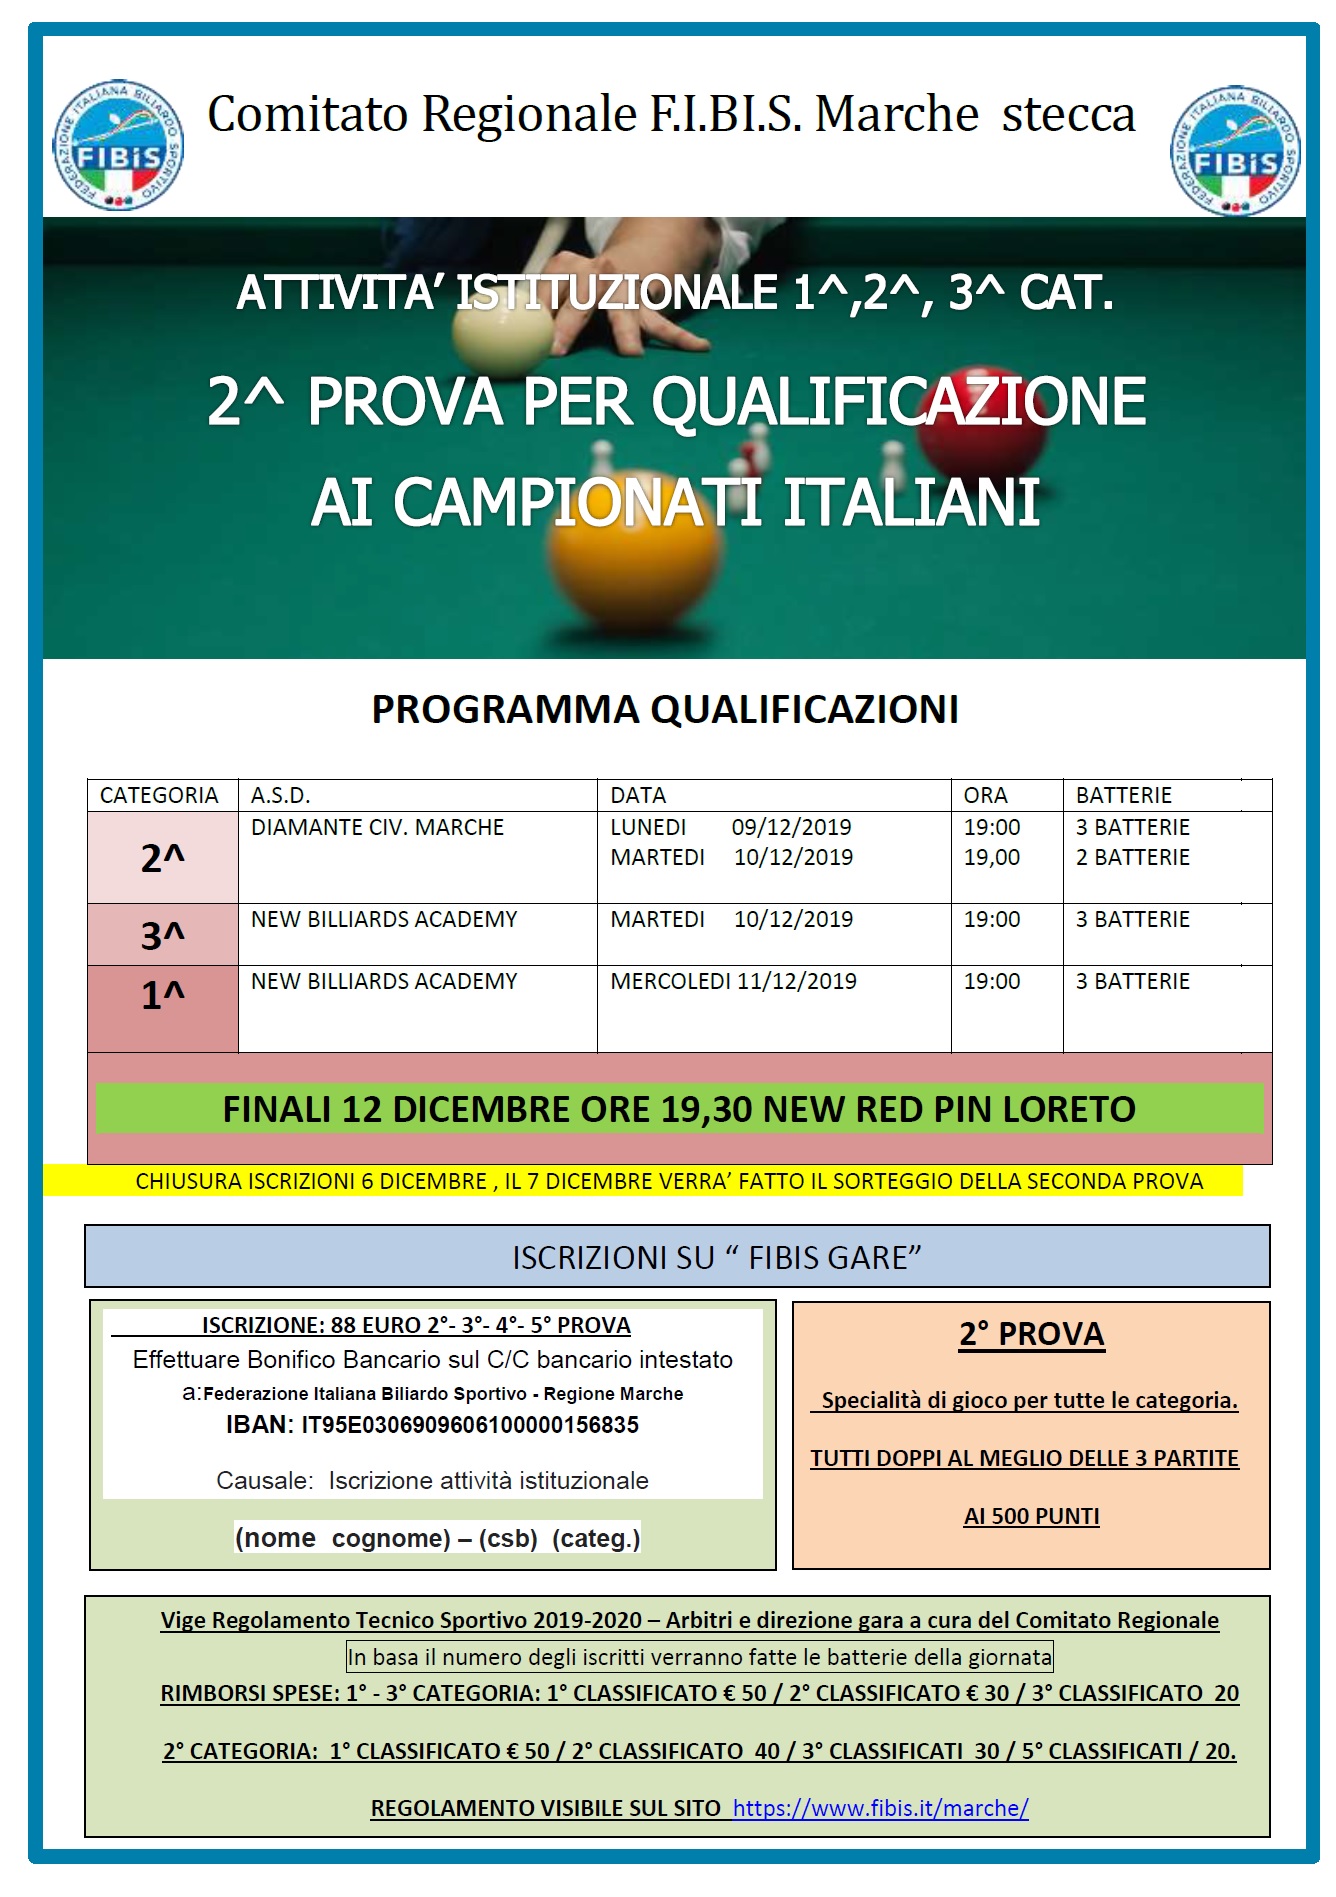 2^ Prova per la Qualificazione ai Campionati Italiani